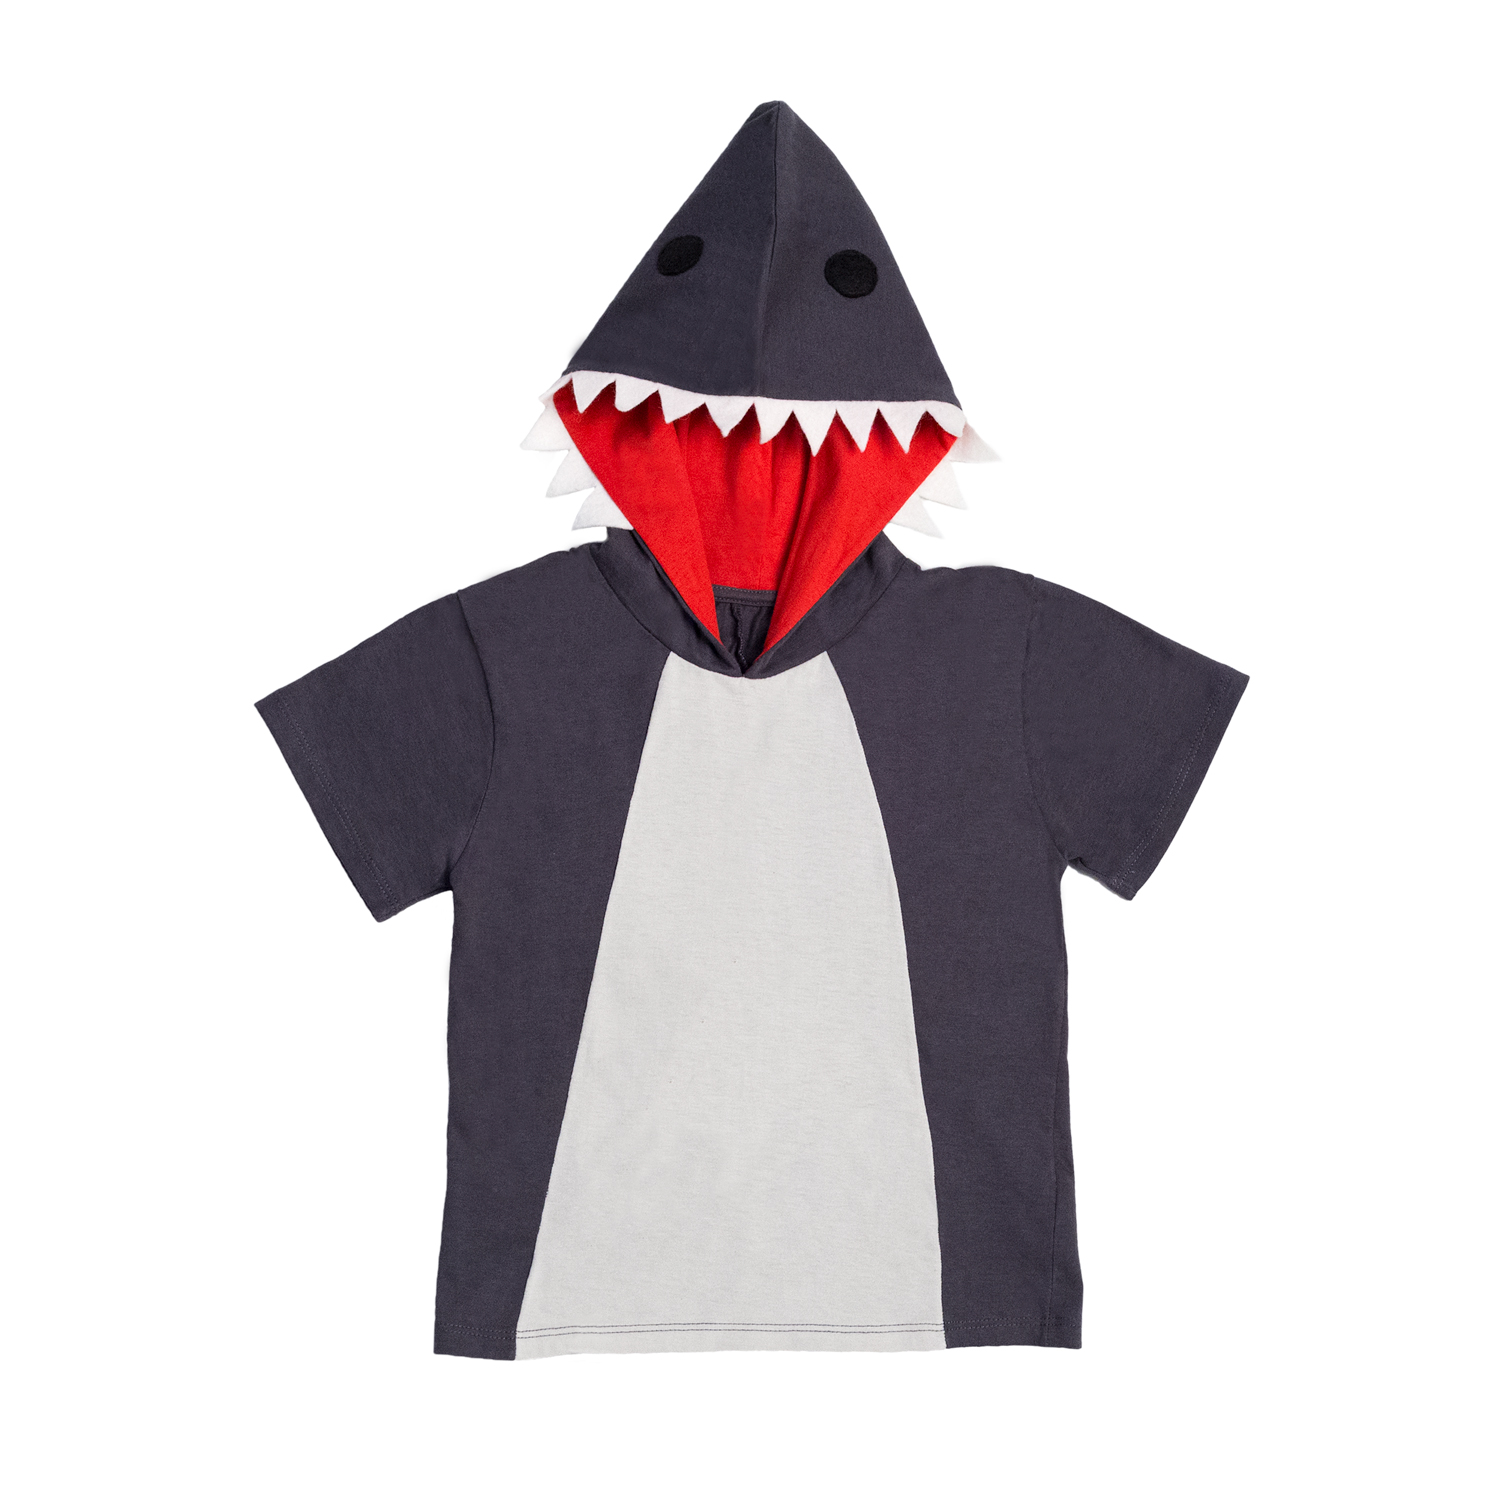 Camiseta Tubarão